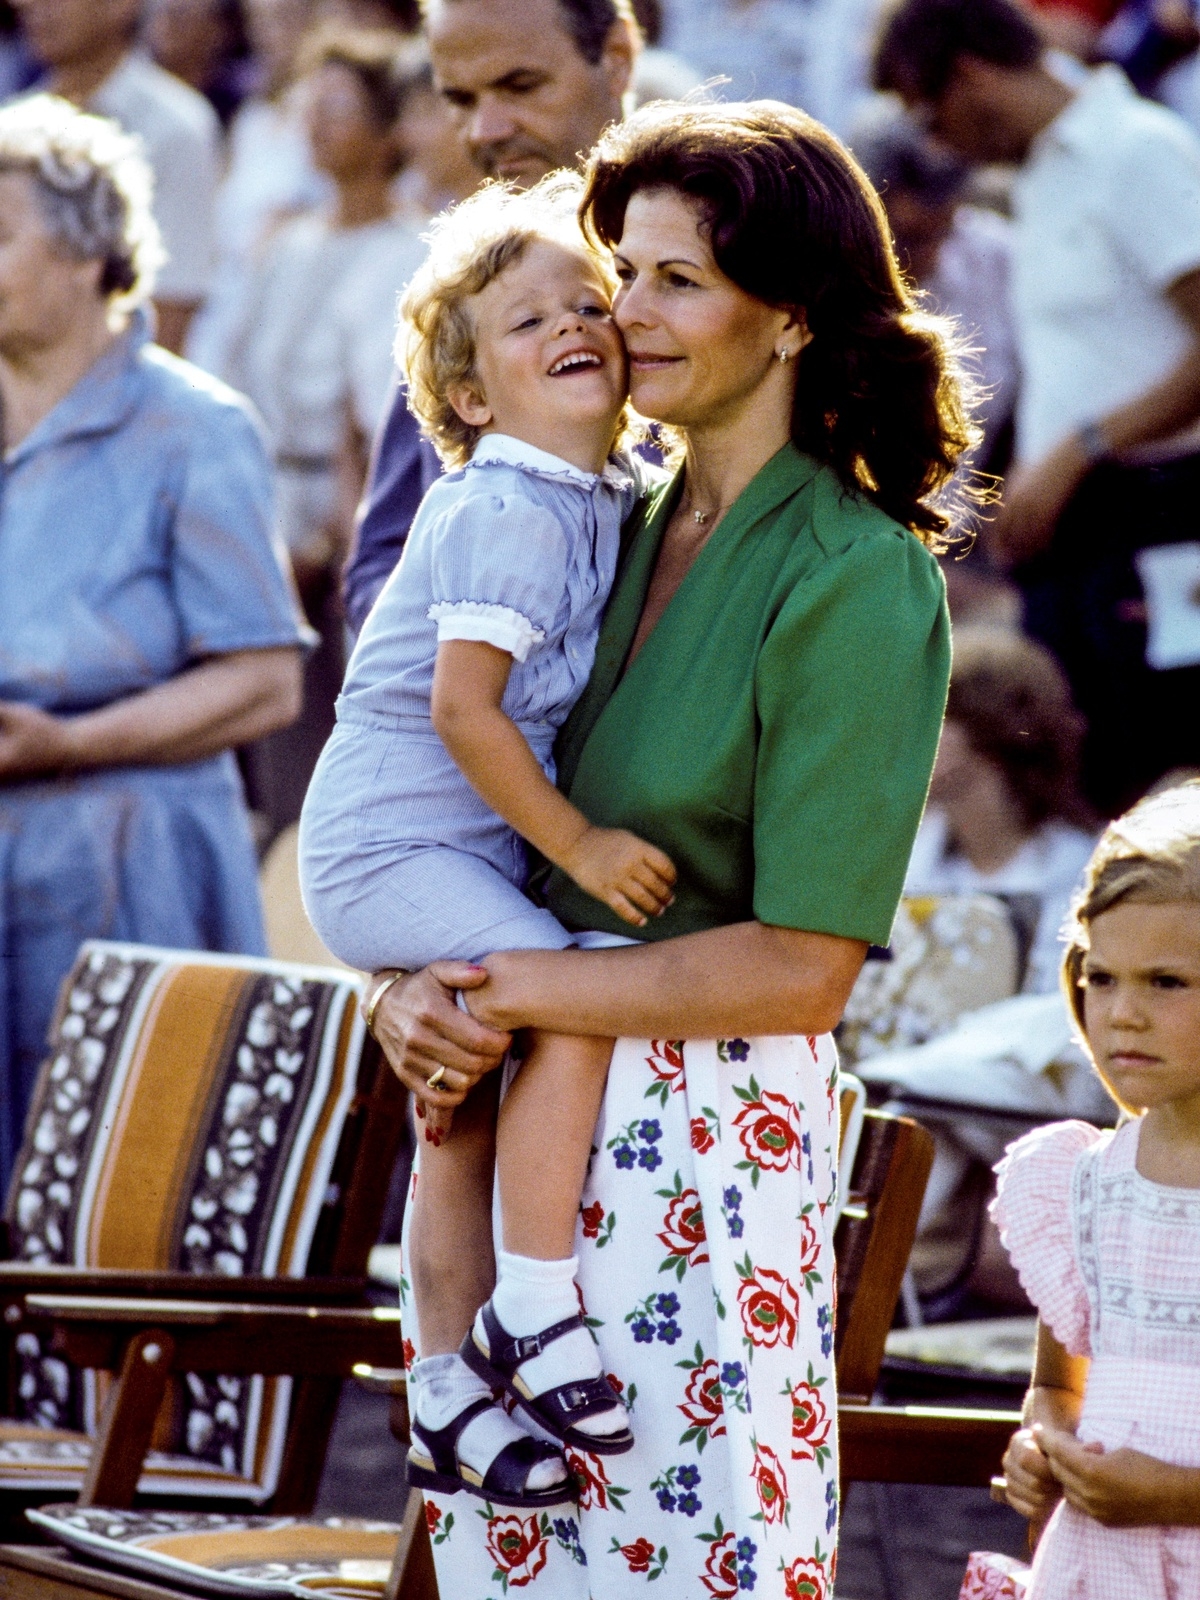 Prins Carl Philip trycker ömsint sin kind mot drottning Silvias kind i samband med firandet av kronprinsessan Victorias födelsedag på Öland 1983.
Foto: Stefan Lindblom/TT